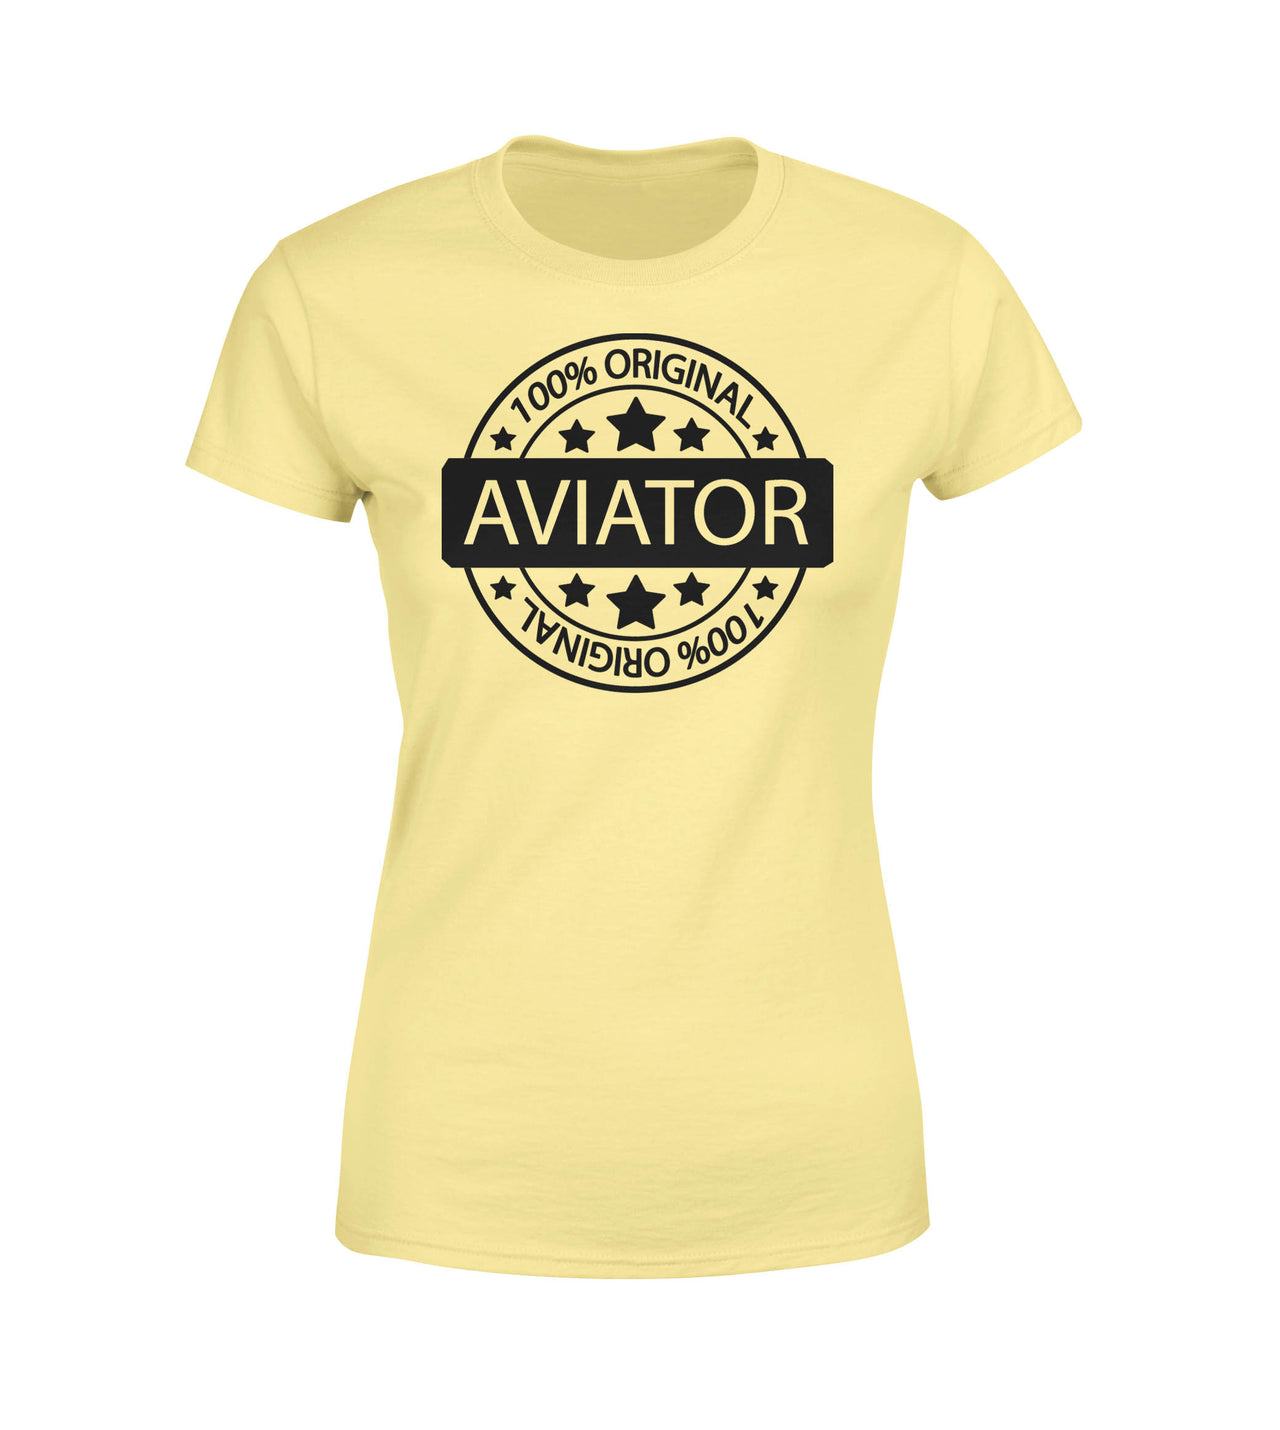 %100 Original Aviator Designed Women T-Shirts